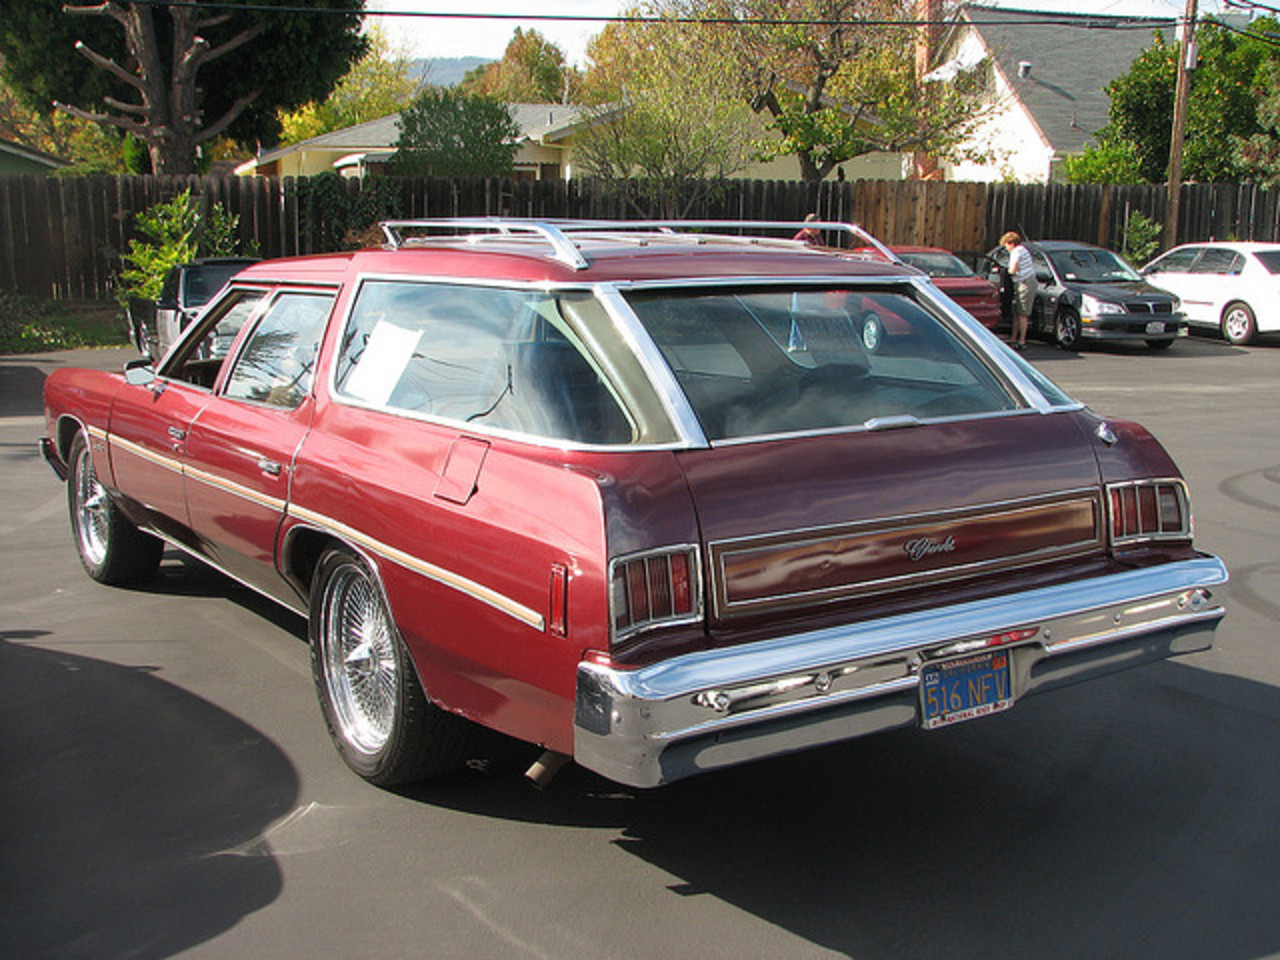 1975 Chevrolet Impala Station Wagon '516NEV' 4 Flickr - Photo.